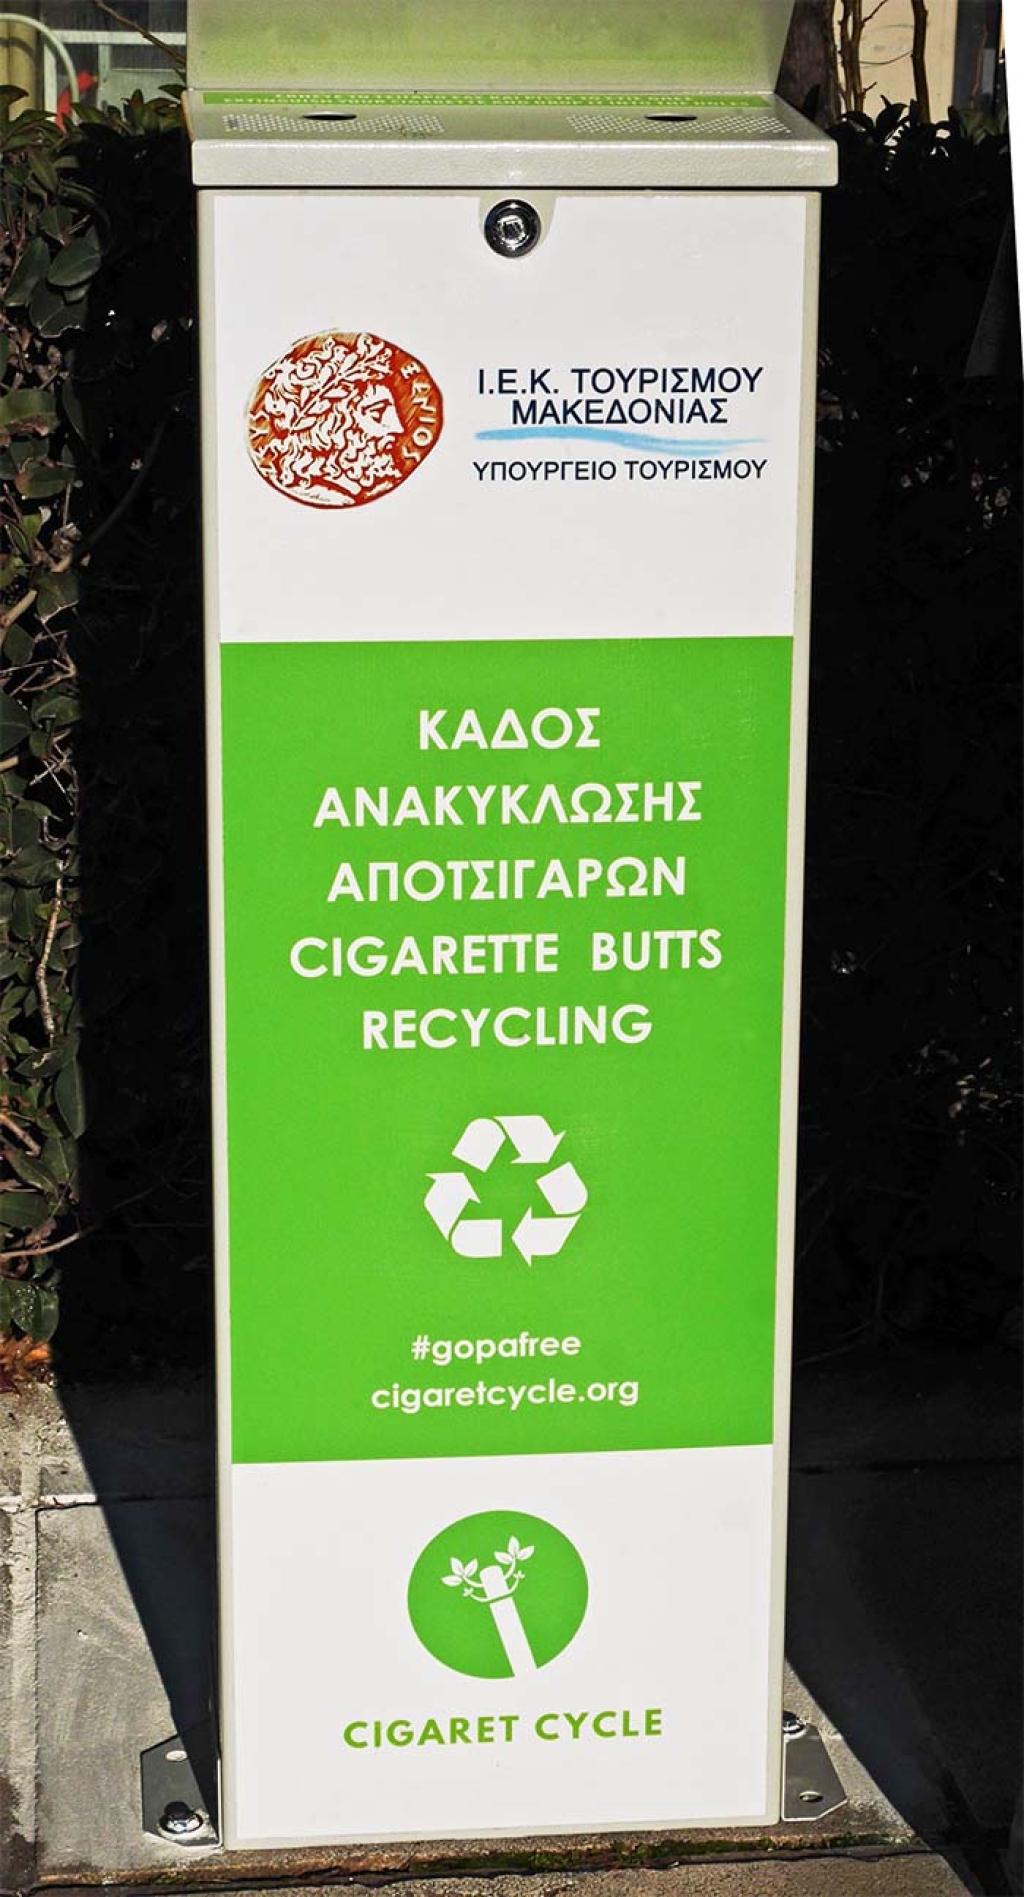 Δωρεά ειδικού κάδου συλλογής αποτσίγαρων από την AMKE Cigaret Cycle - Δελτίου τύπου.